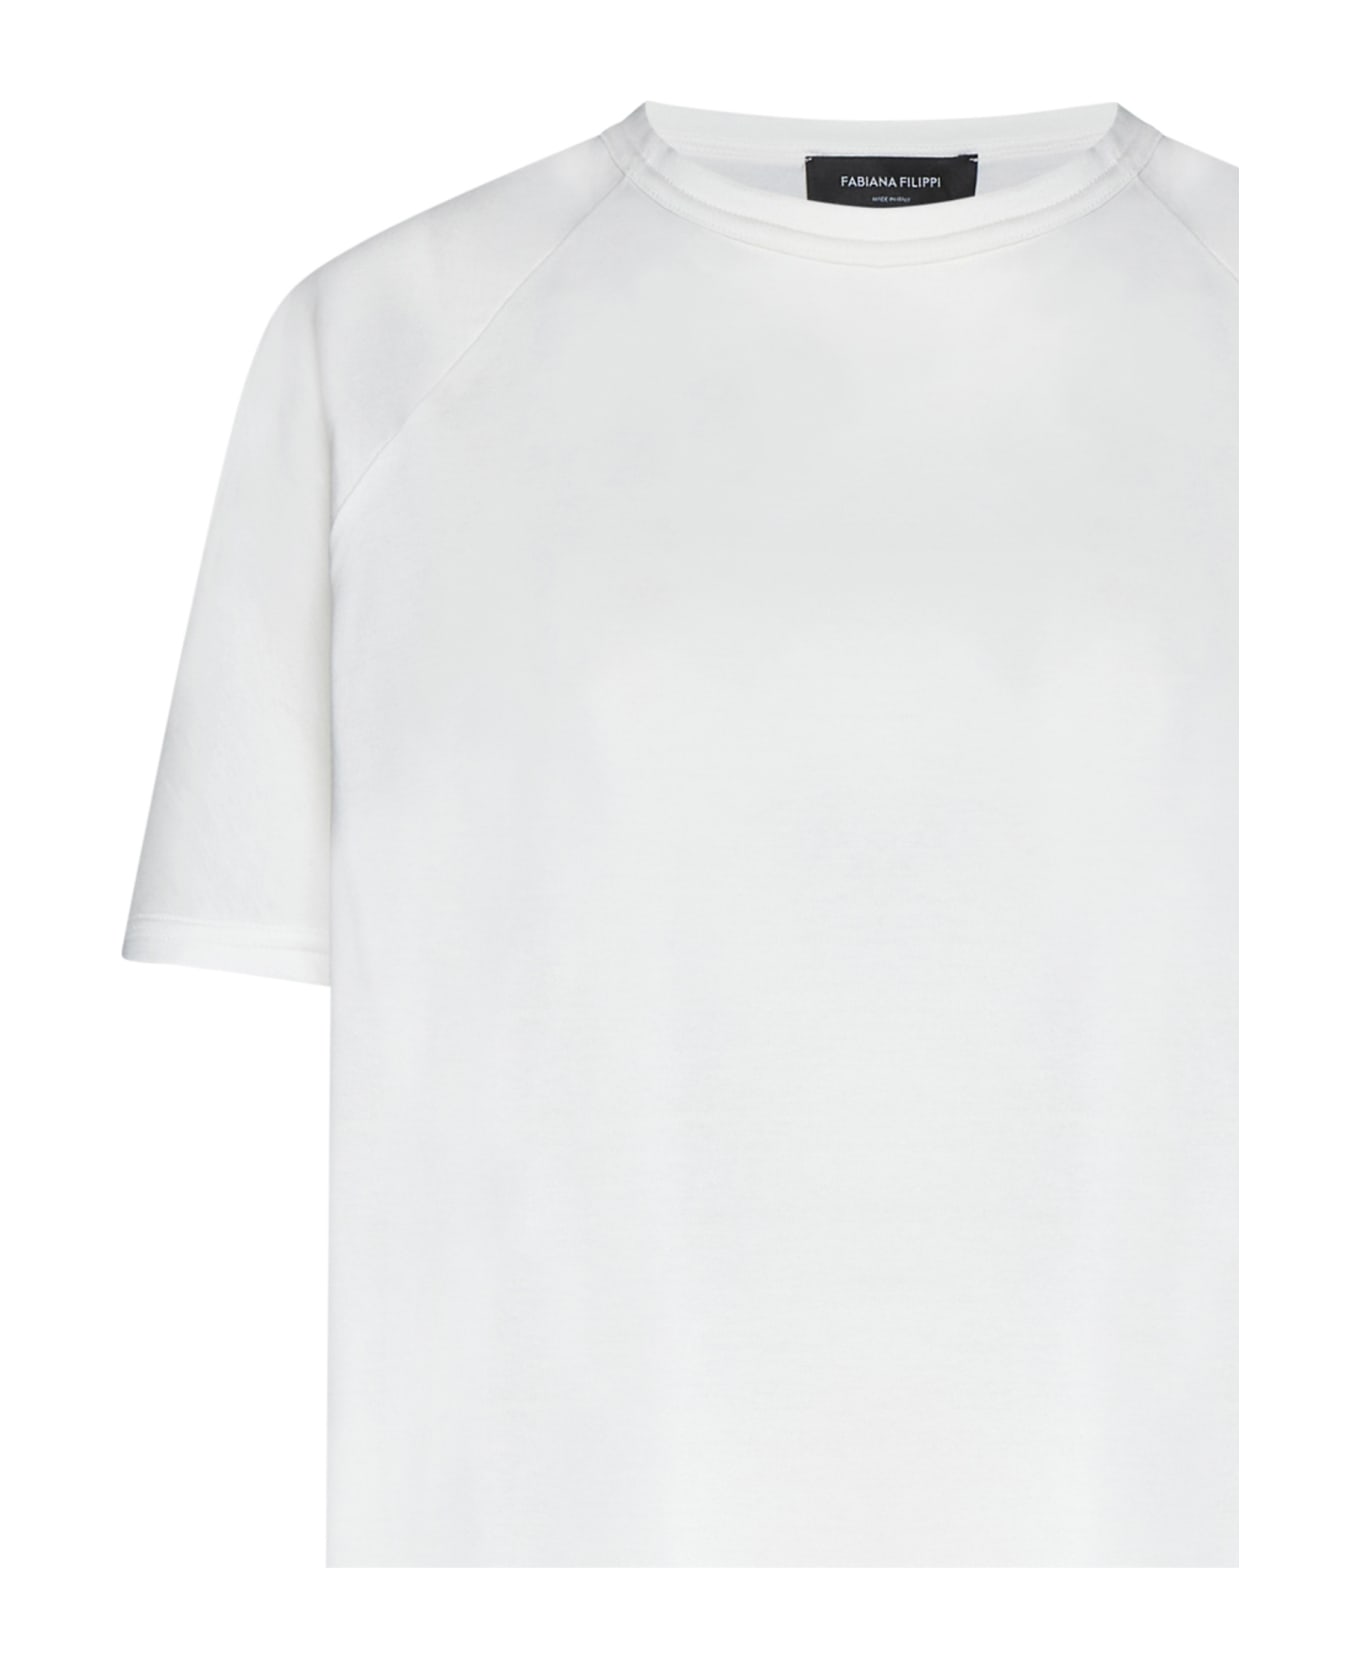 Fabiana Filippi T-Shirt - White